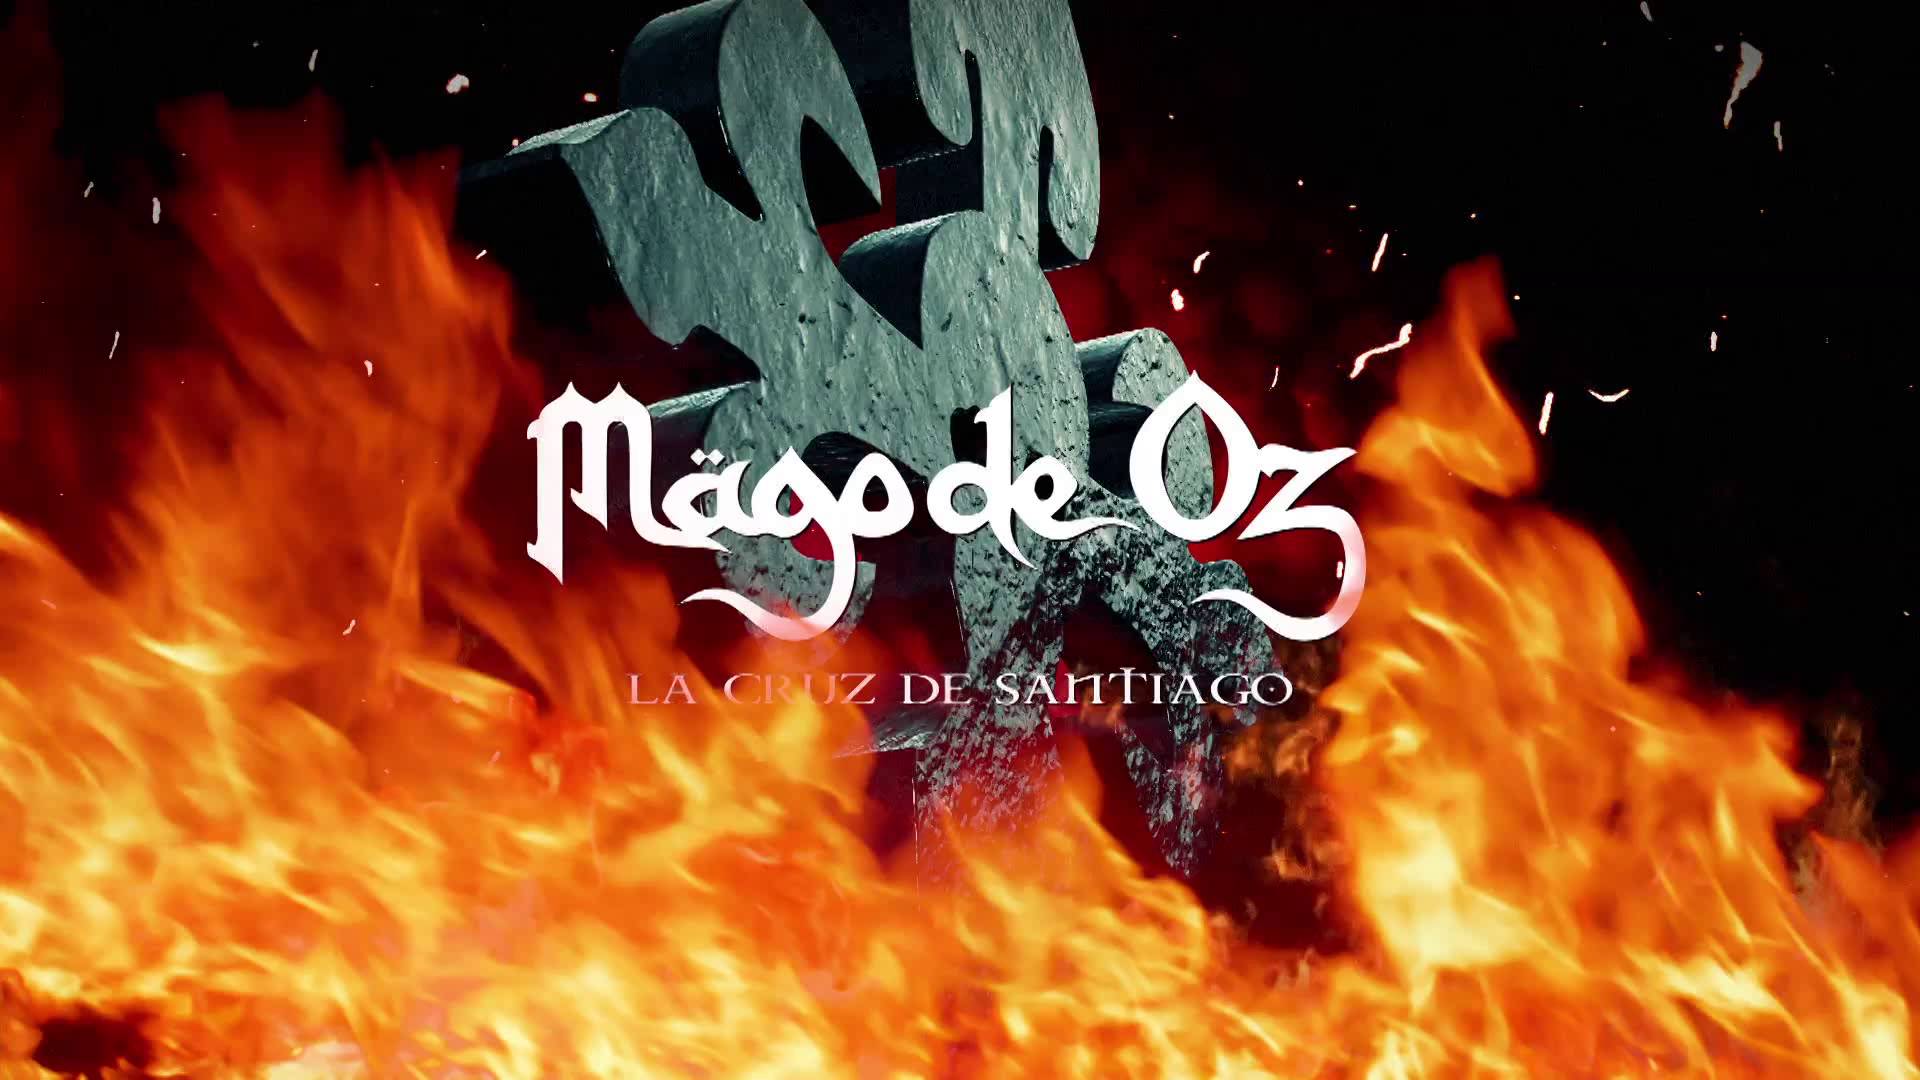 Mägo de Oz Cruz de Santiago (Lyric Video)